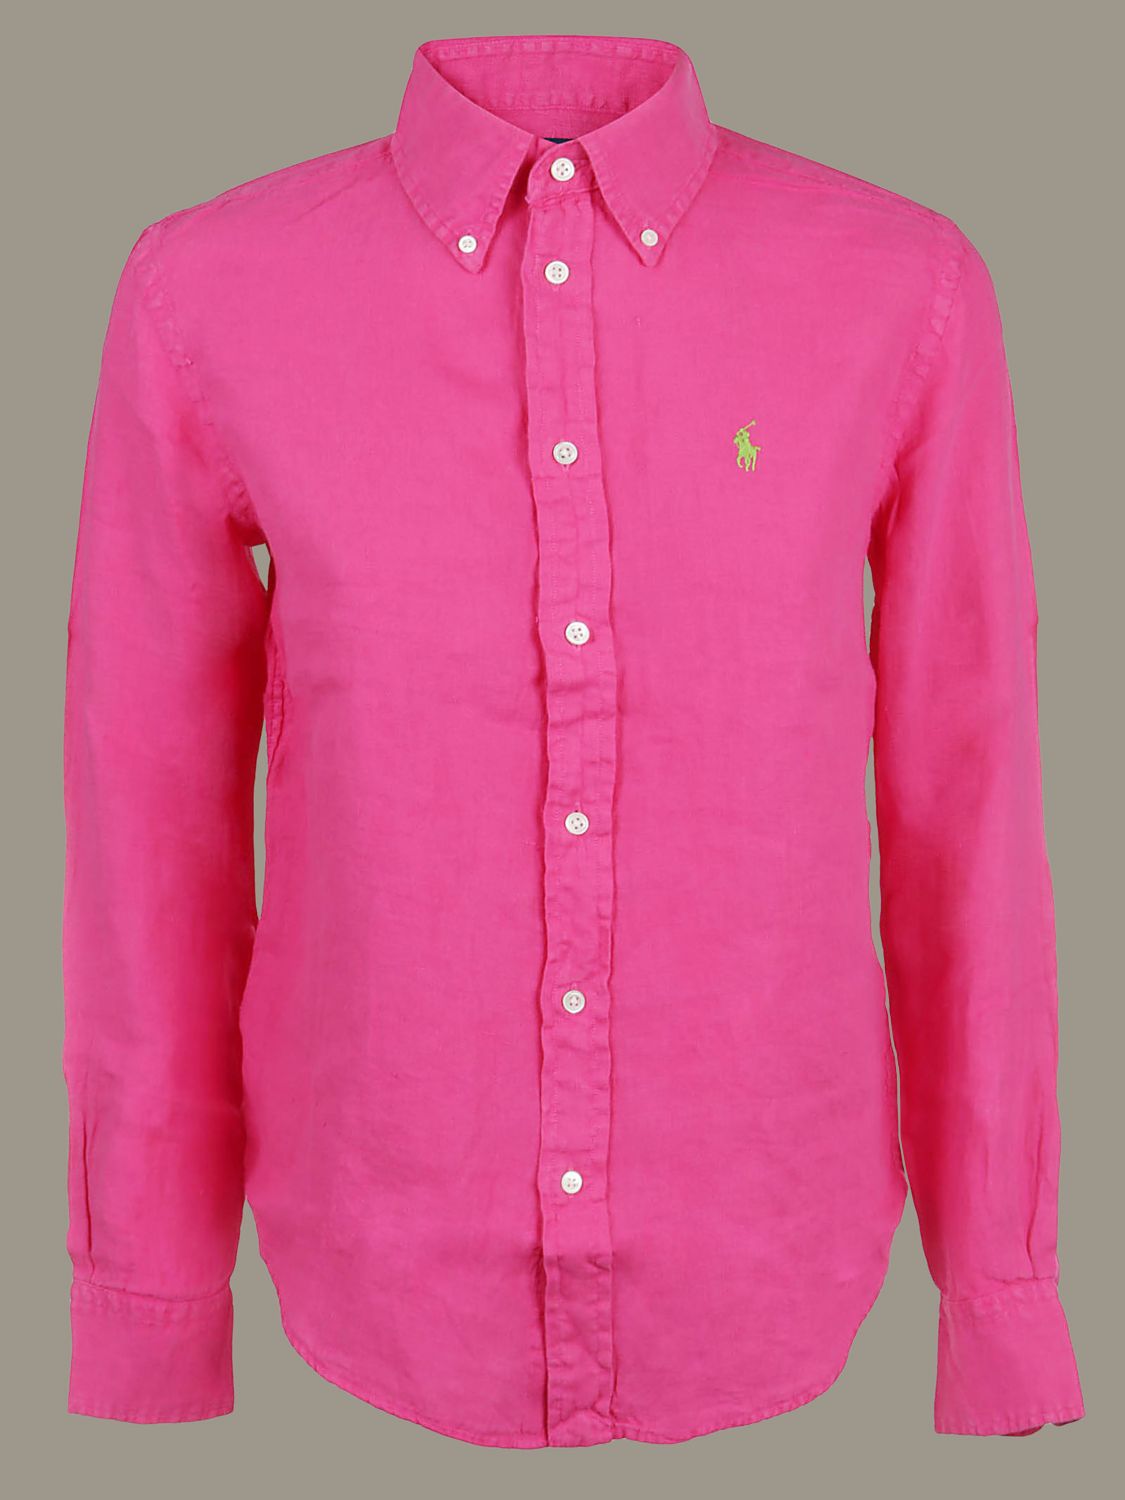 pink ralph lauren shirt womens